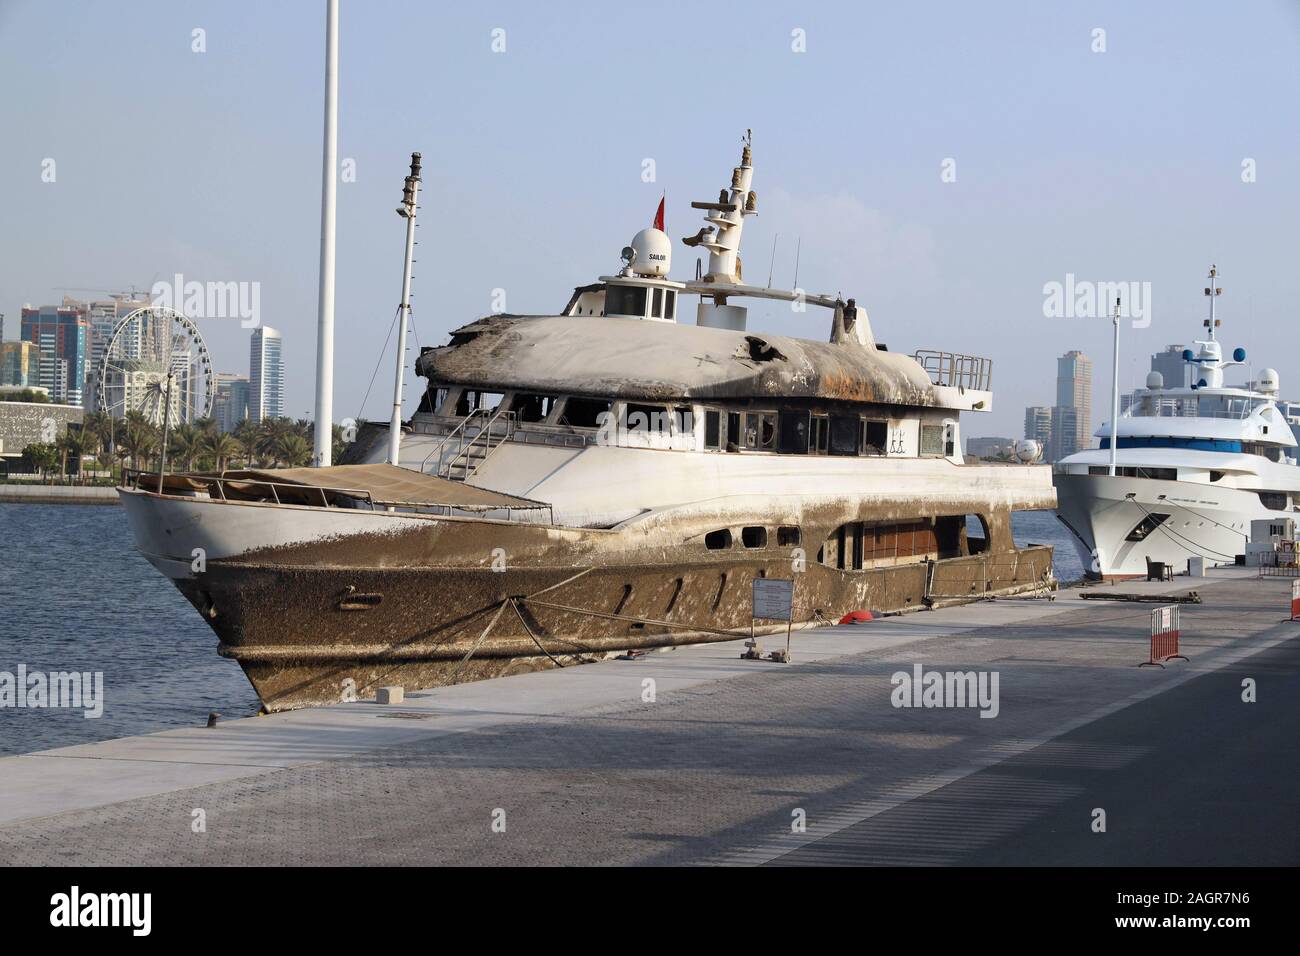 Dubai, Emirati Arabi Uniti - 03 dicembre, 2019. Il lato inverso del capitale Seaport. Un piccolo bruciato in acciaio non privato nome barche mercantili contro Foto Stock